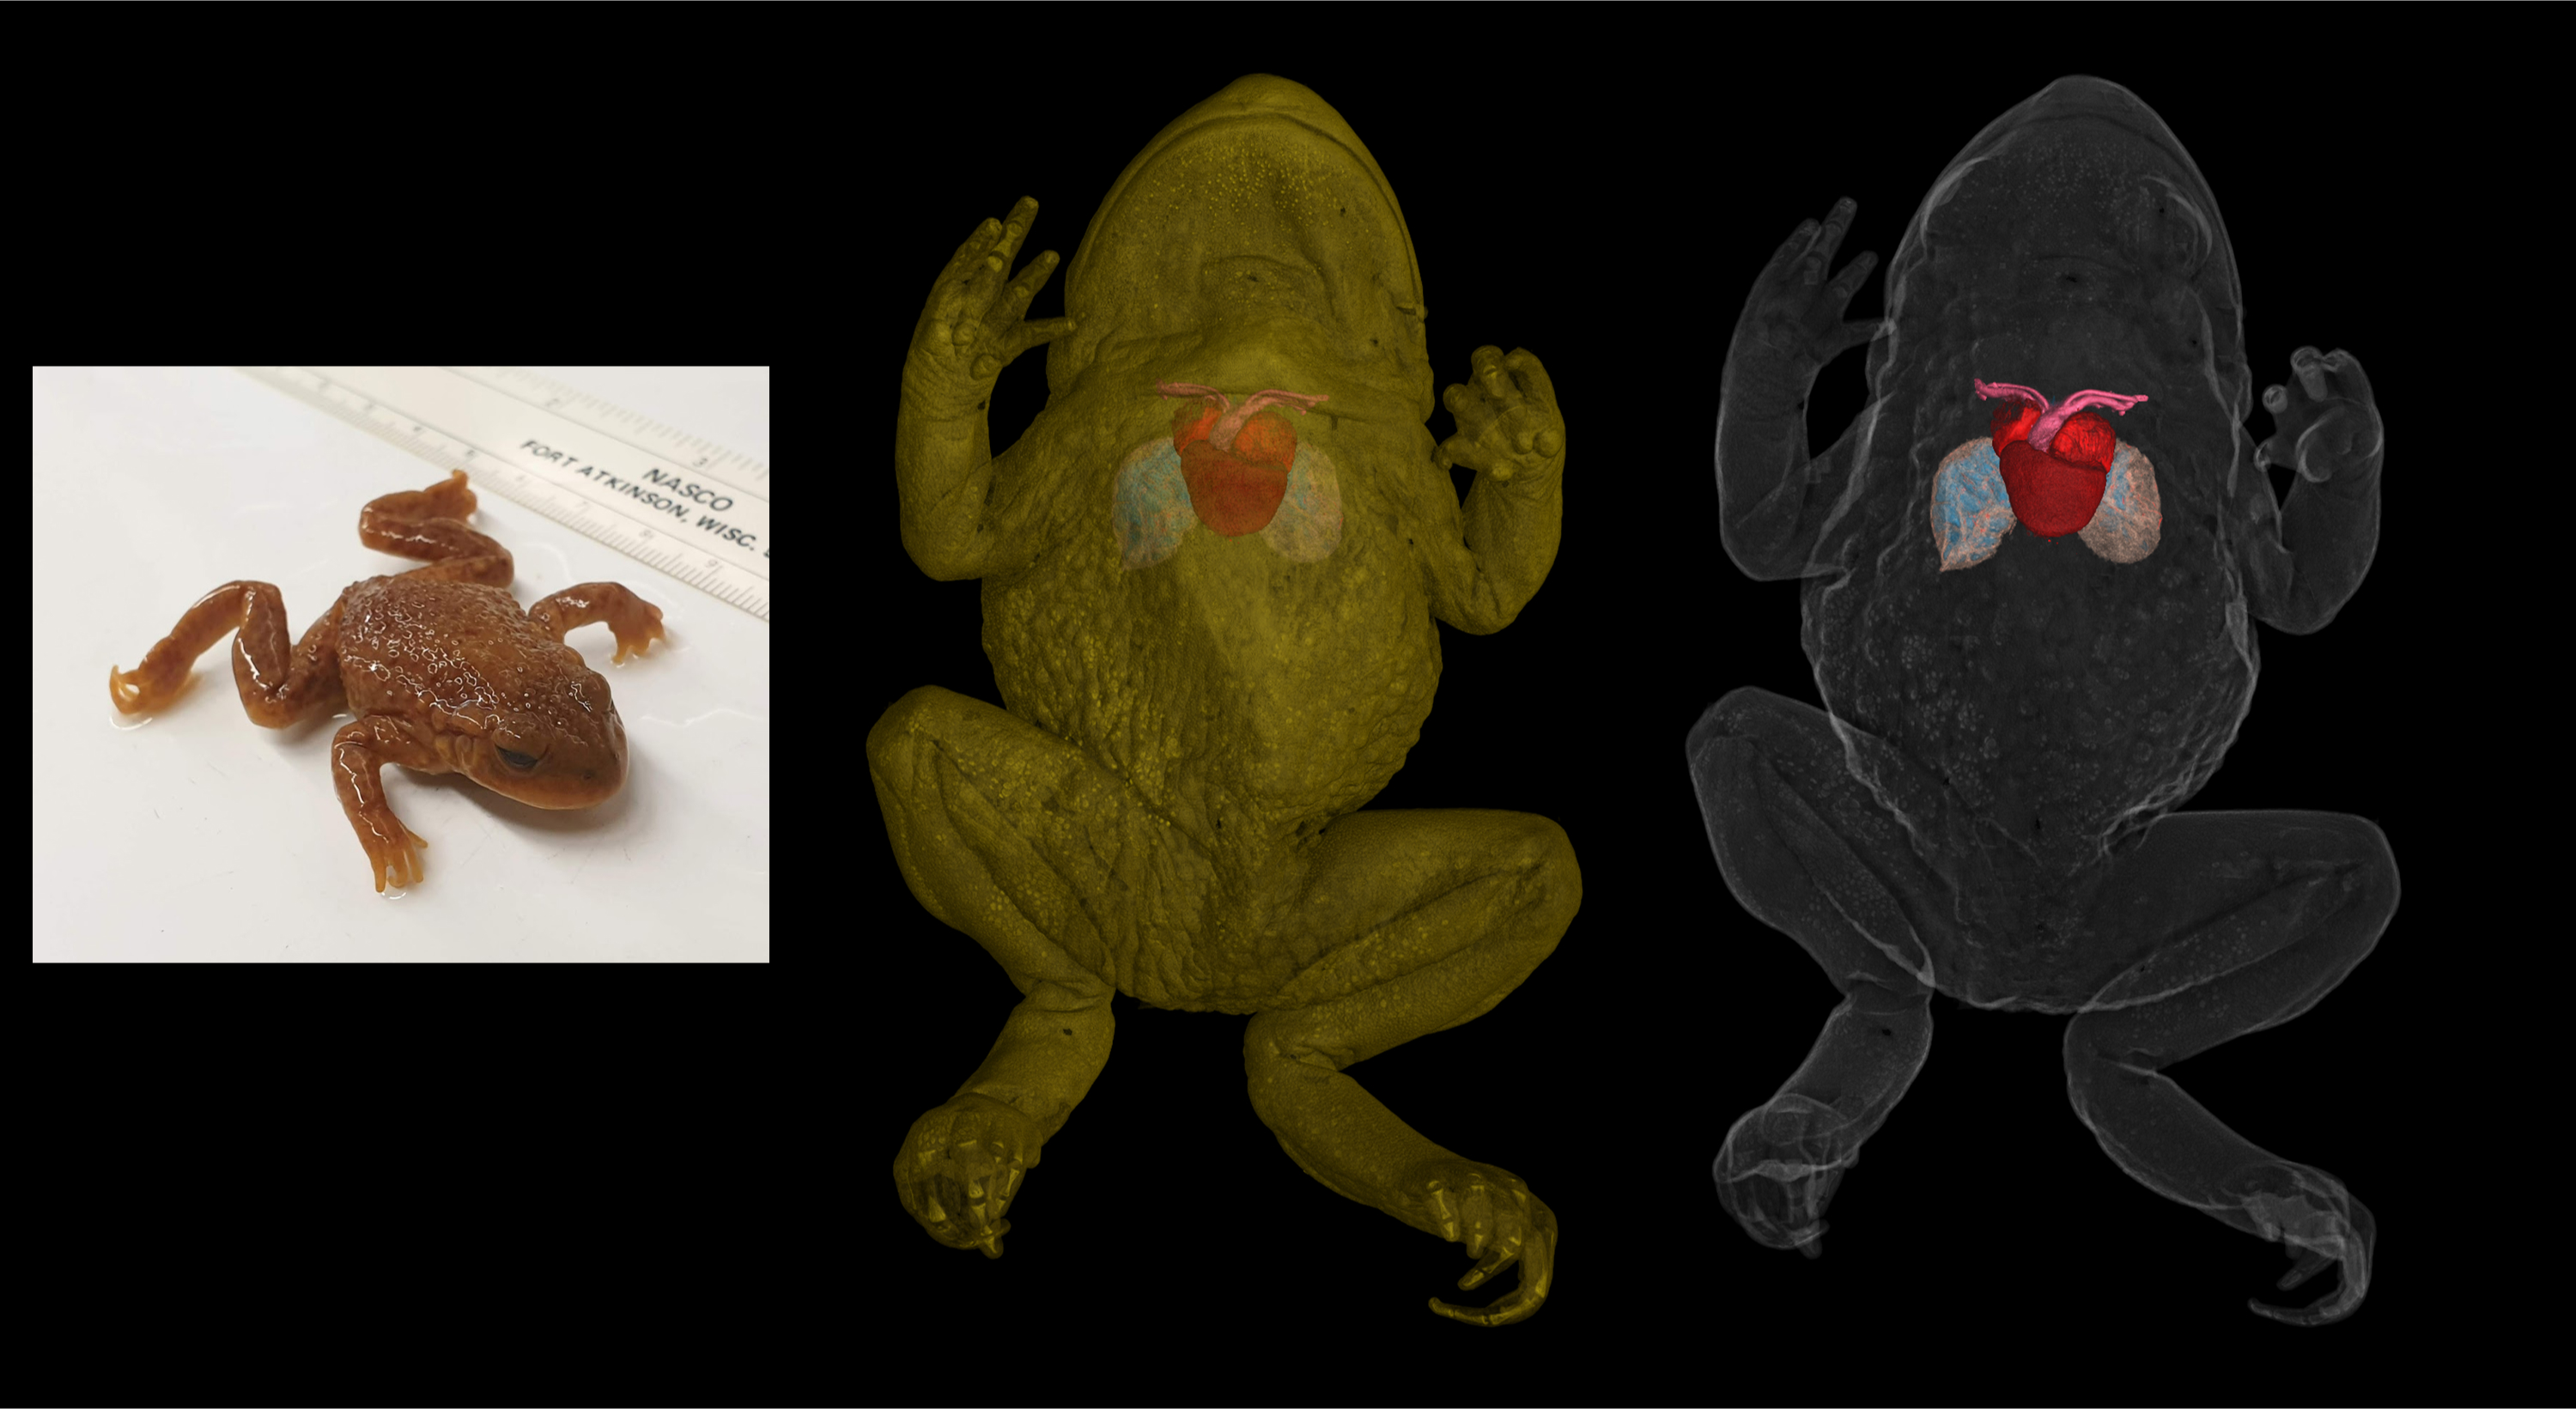 КТ жабы вида Alytes с фотографией образца слева.